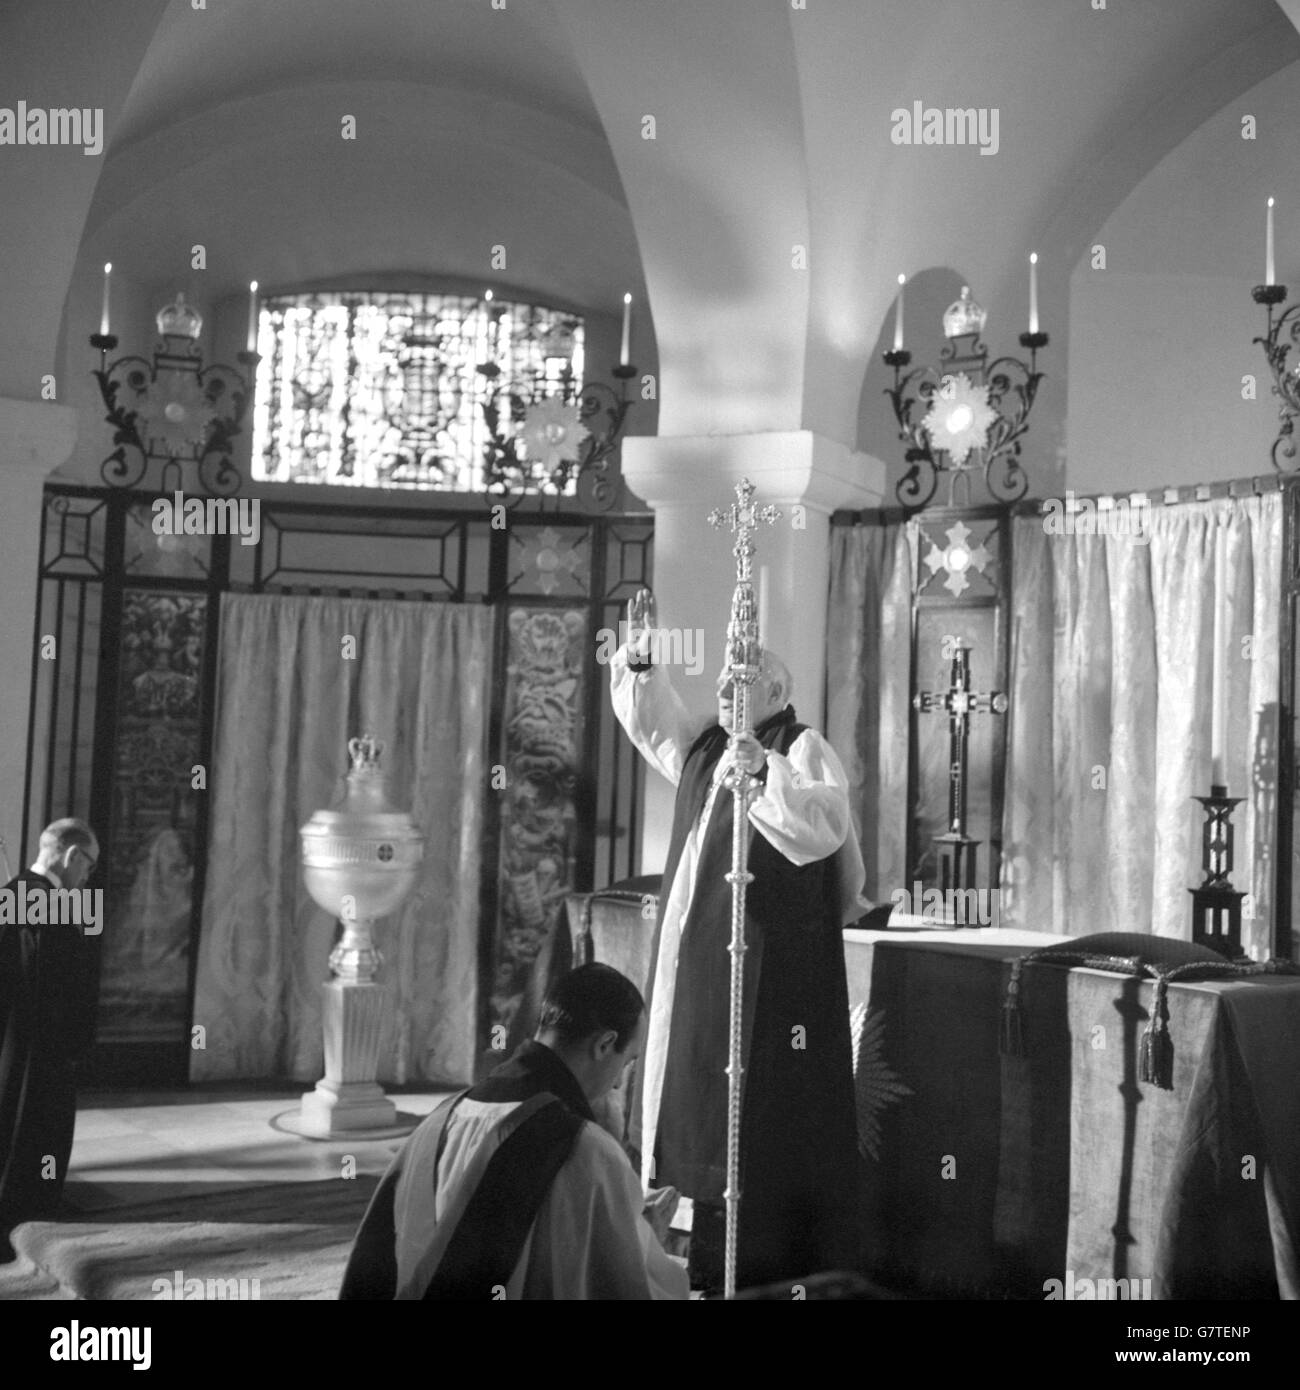 Le Dr Arthur Michael Ramsey donne sa bénédiction pour la première fois en tant qu'archevêque de Canterbury de l'autel de la chapelle de l'ordre de l'Empire britannique dans la crypte de la cathédrale Saint-Paul, Londres. C'était son premier acte en tant que nouvel archevêque de Canterbury, et est arrivé à la fin de la cérémonie de confirmation de son élection, qui a été effectuée par les Commissaires royaux (l'évêque de Londres et huit évêques diocésains) au nom de la Reine. Le Dr Ramsey, le 100e archevêque de Canterbury, sera entronisé à la cathédrale de Canterbury. Il était l'ancien archevêque de York. Banque D'Images